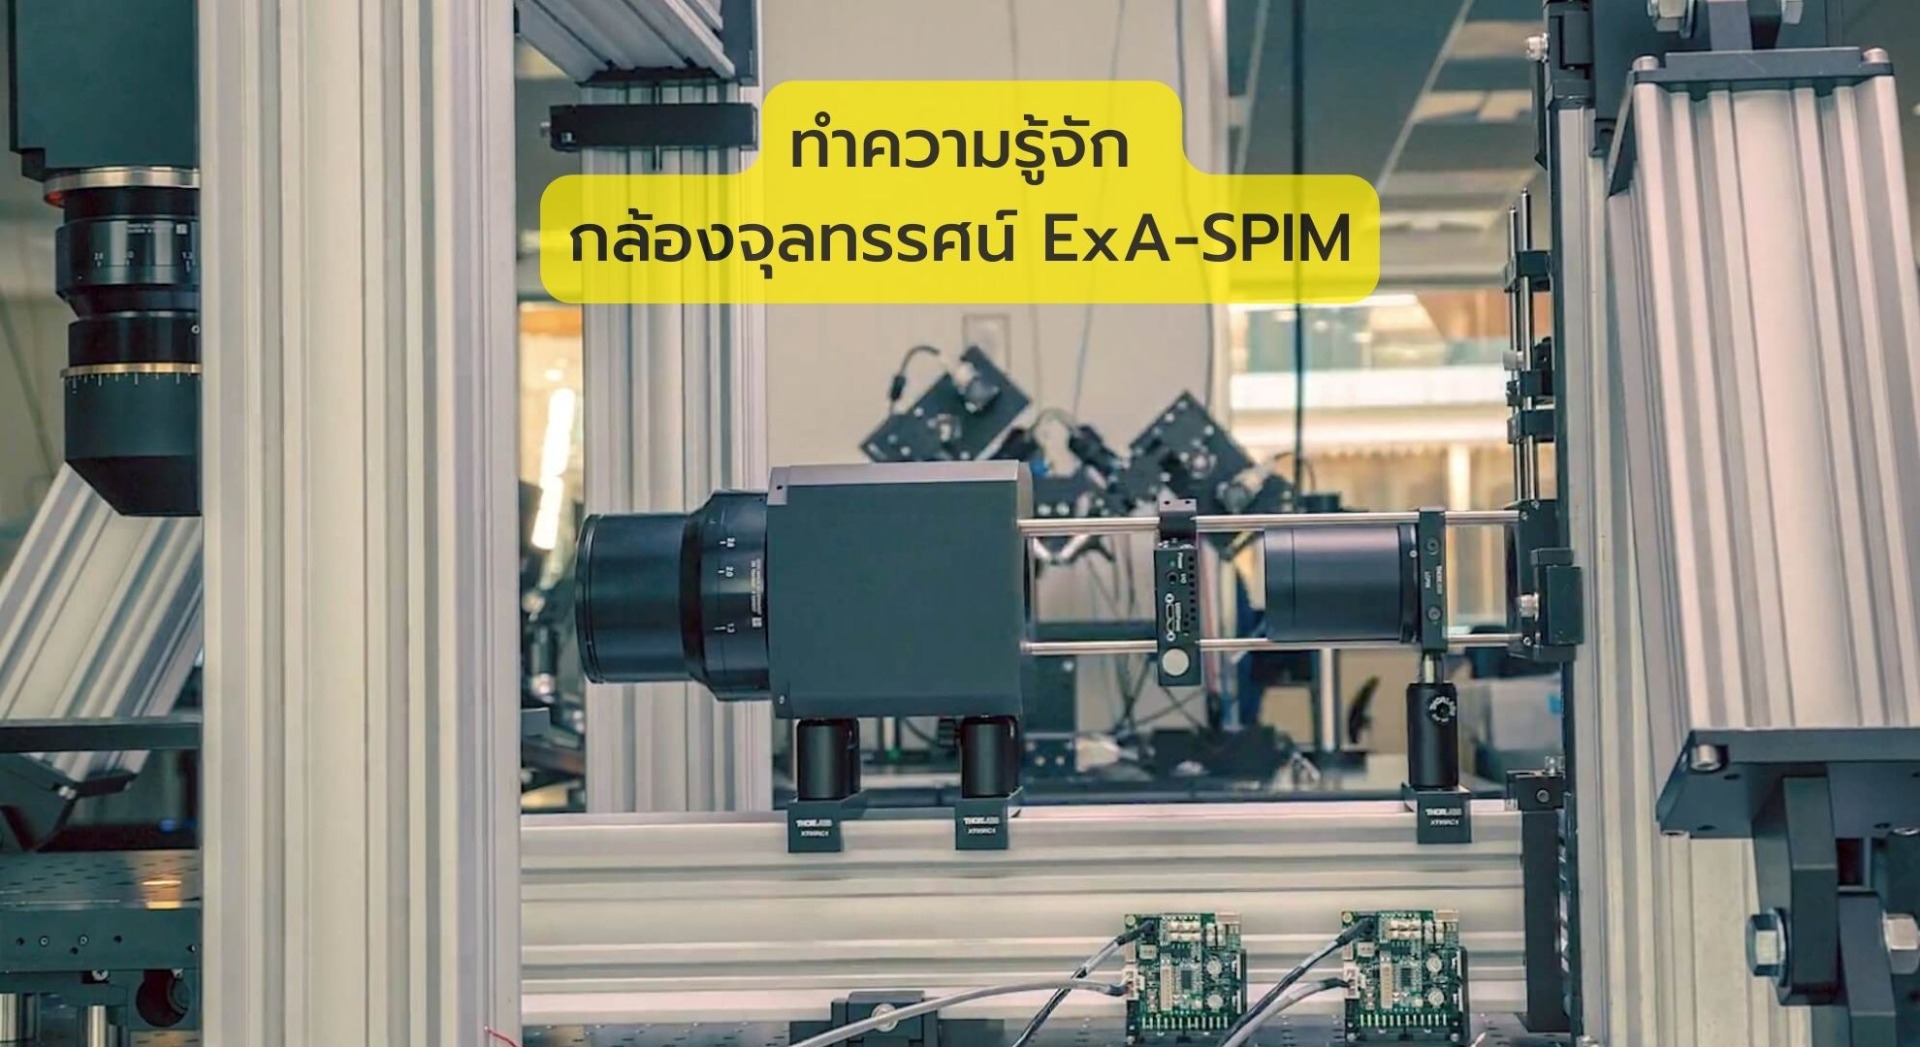 ทำความรู้จัก กล้องจุลทรรศน์ ExA-SPIM